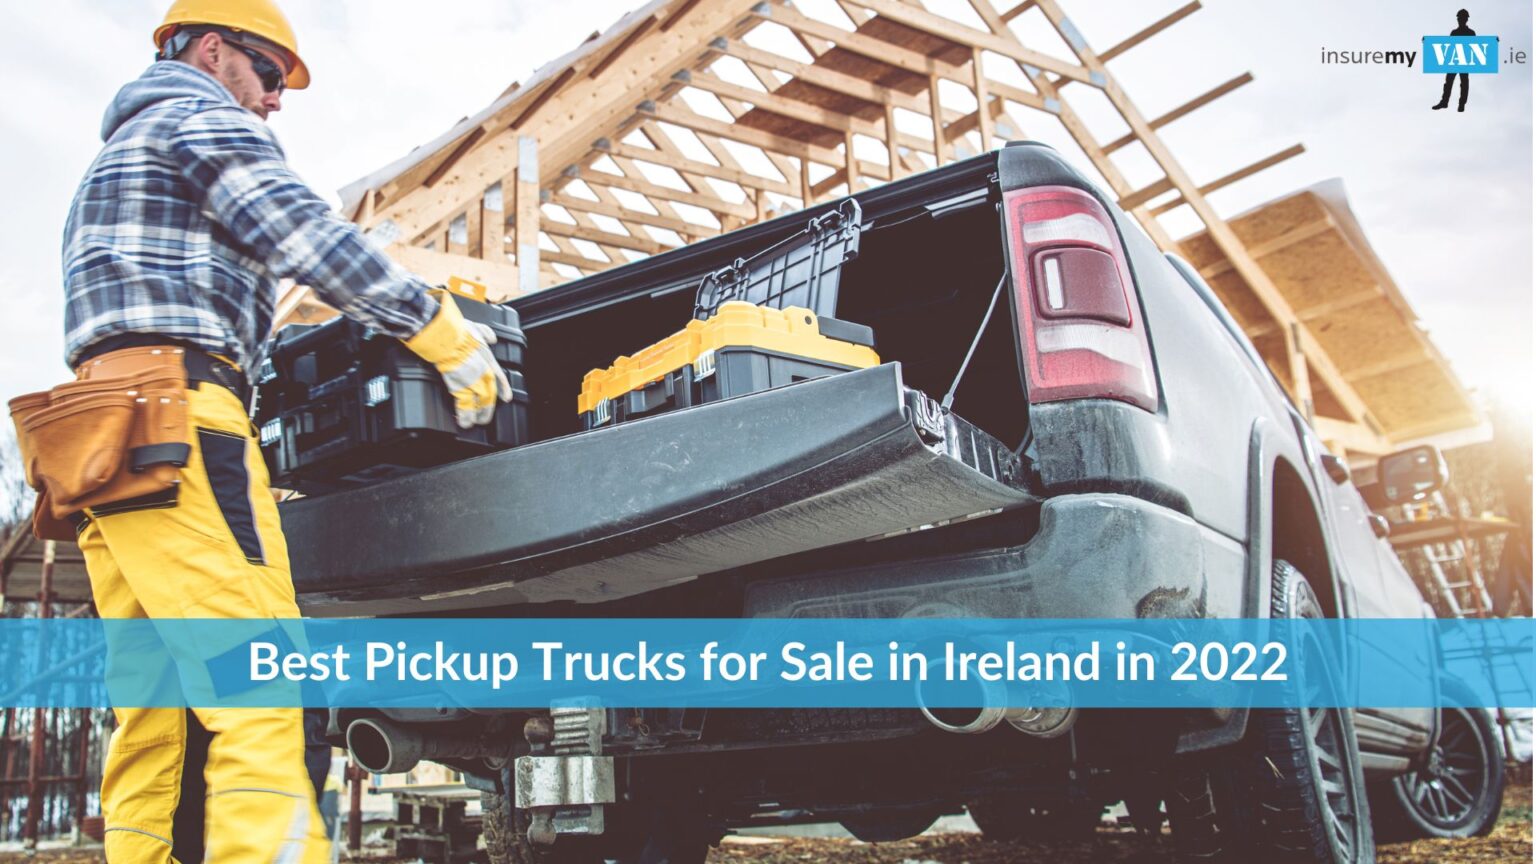 Best Pickup Trucks for Sale in Ireland in 2023 Insuremyvan.ie